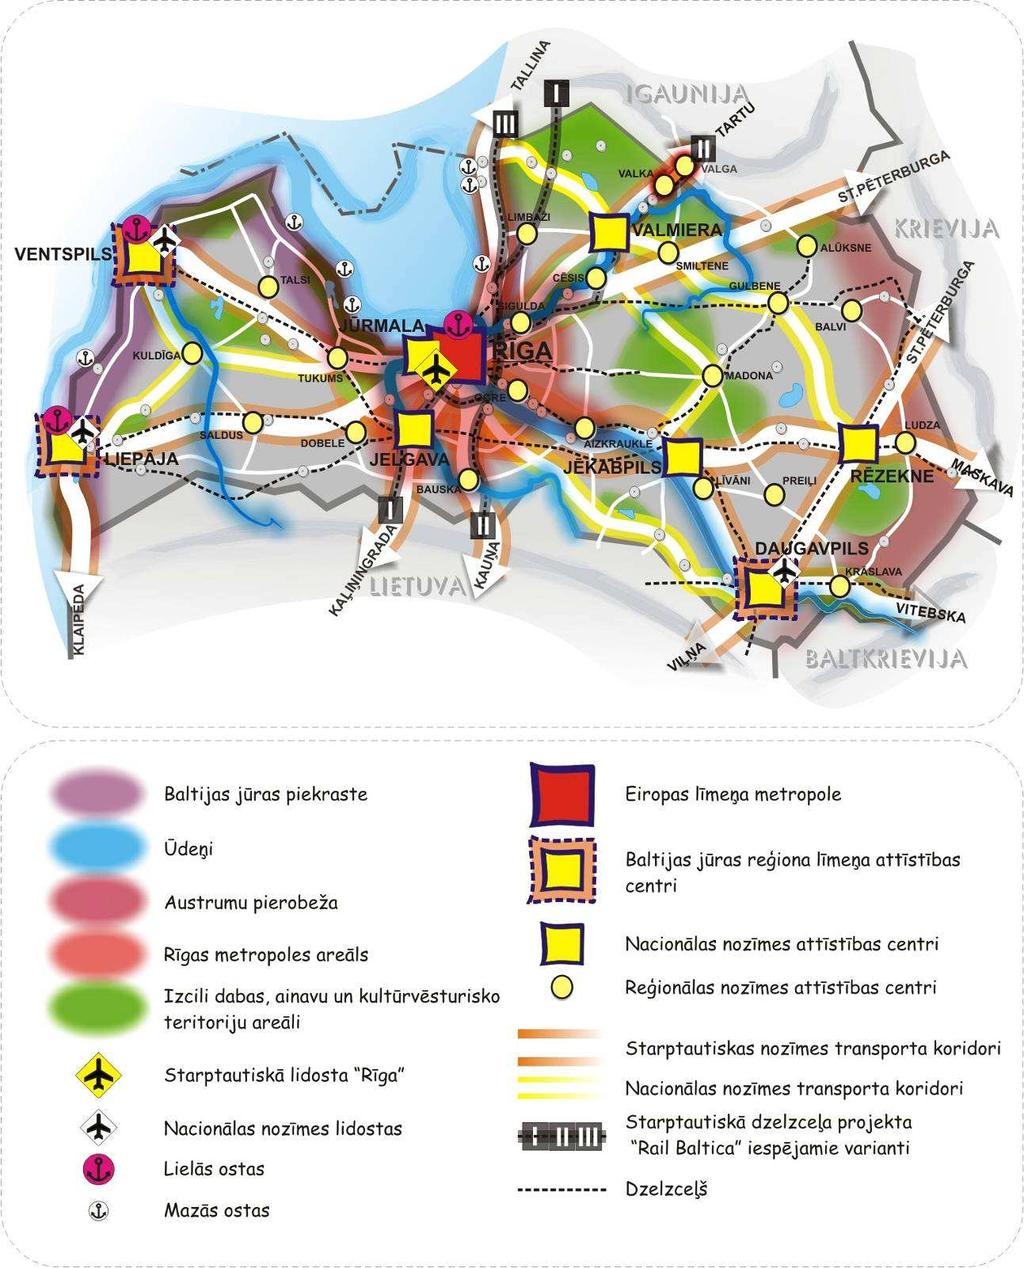 Pierīgas attīstības centru stiprināšana vienlaikus ierobežos nekontrolētas suburbanizācijas procesus Rīgas aglomerācijā.